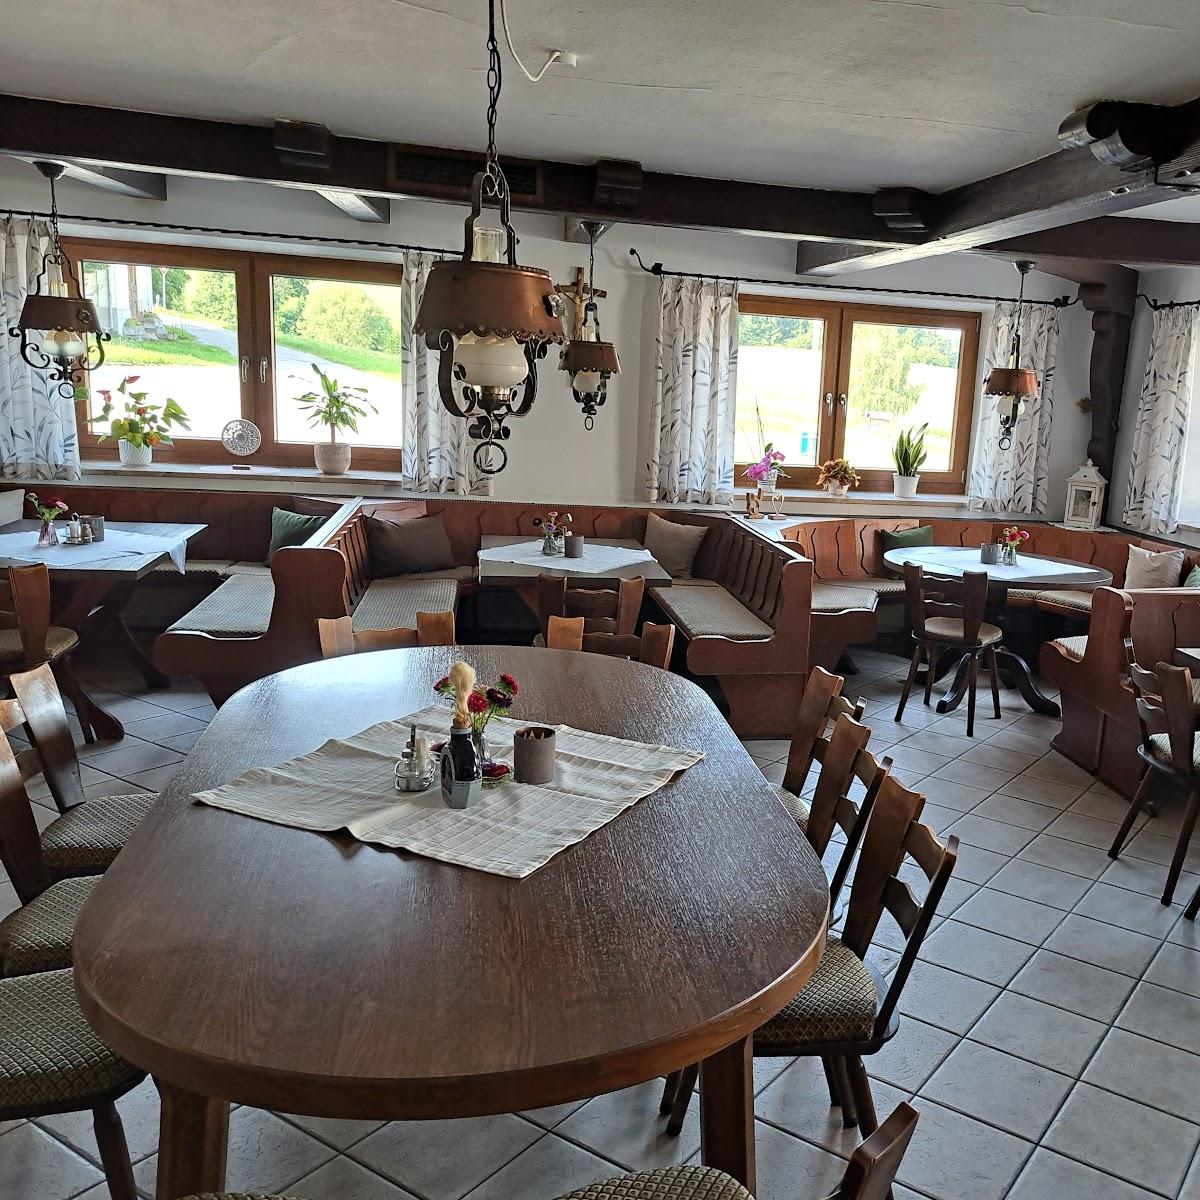 Restaurant "Gasthaus Schaupp" in Kollnburg